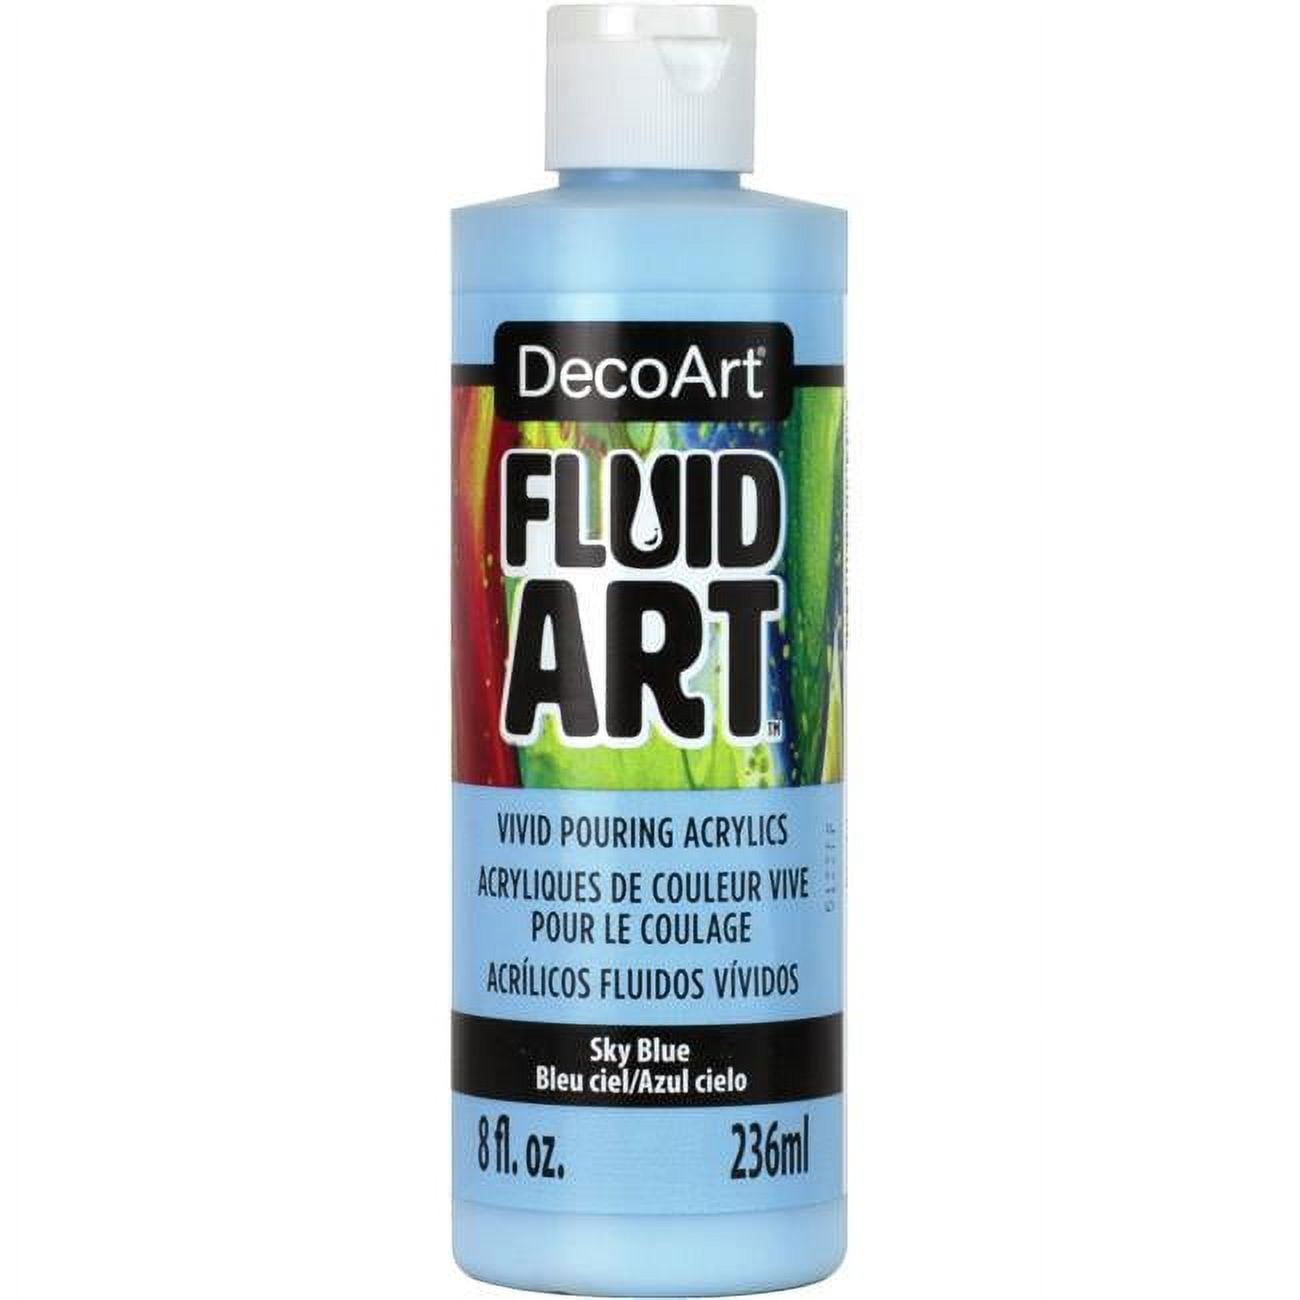 Deco Art DFA-07 Lemon Fluid Art Ready To Pour Acrylic Paint